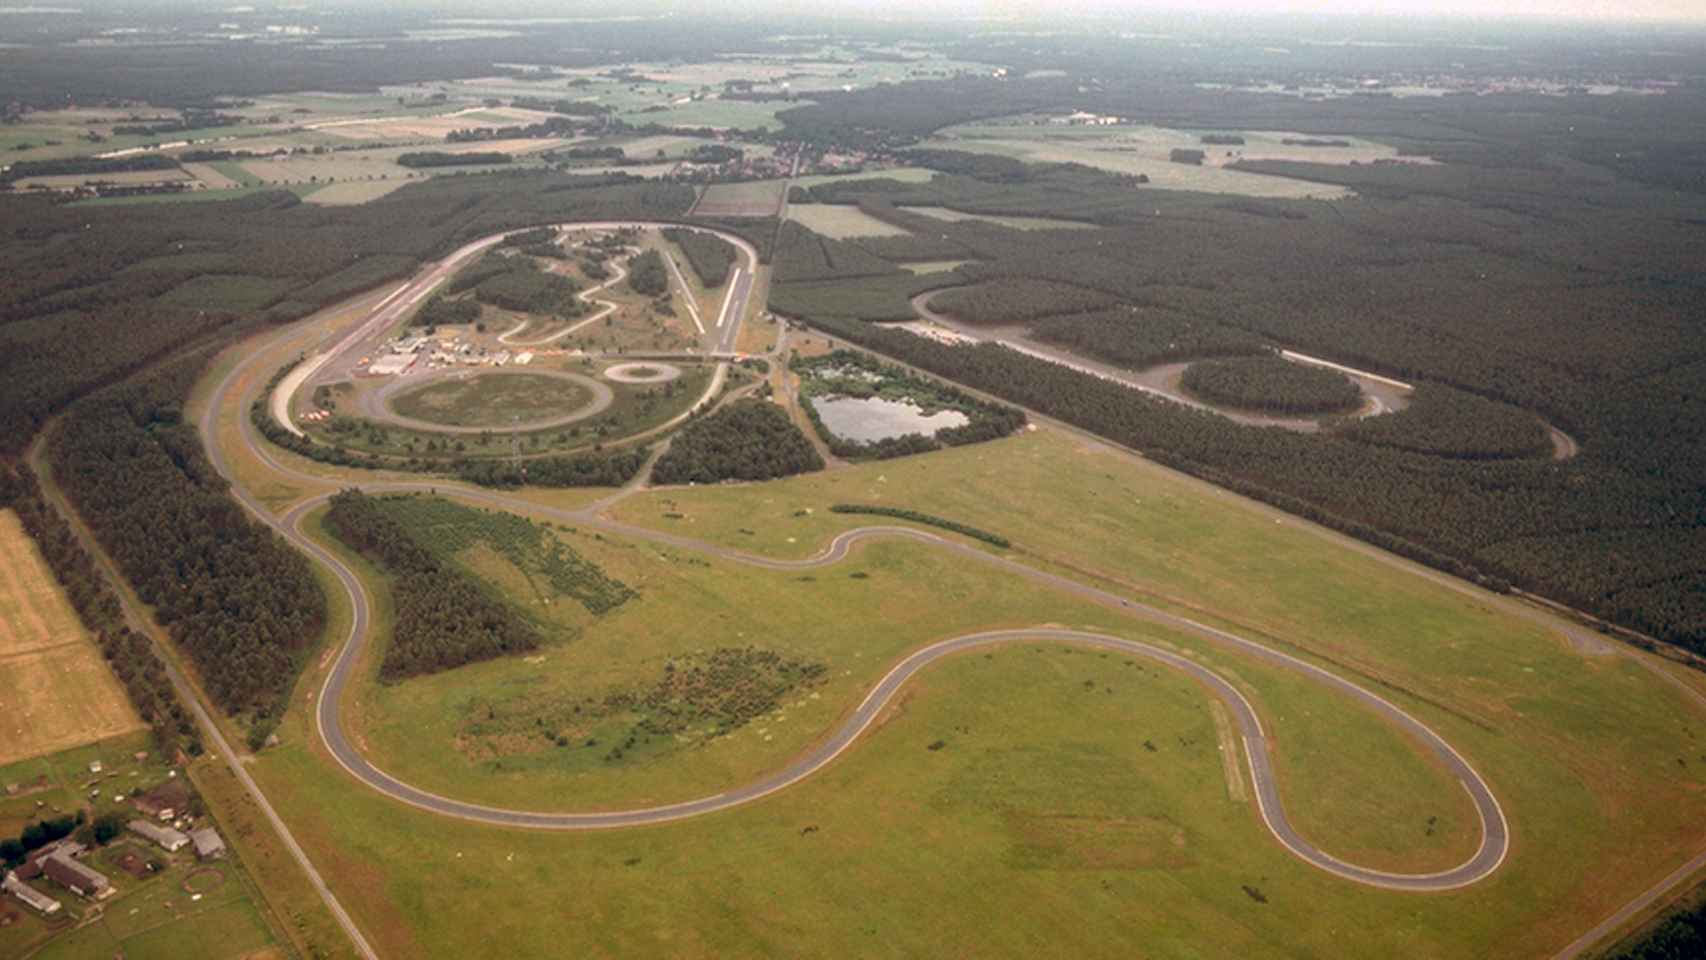 Imagen aérea de algunas instalaciones del Contidrom, el centro de pruebas de Continental en Hannover.